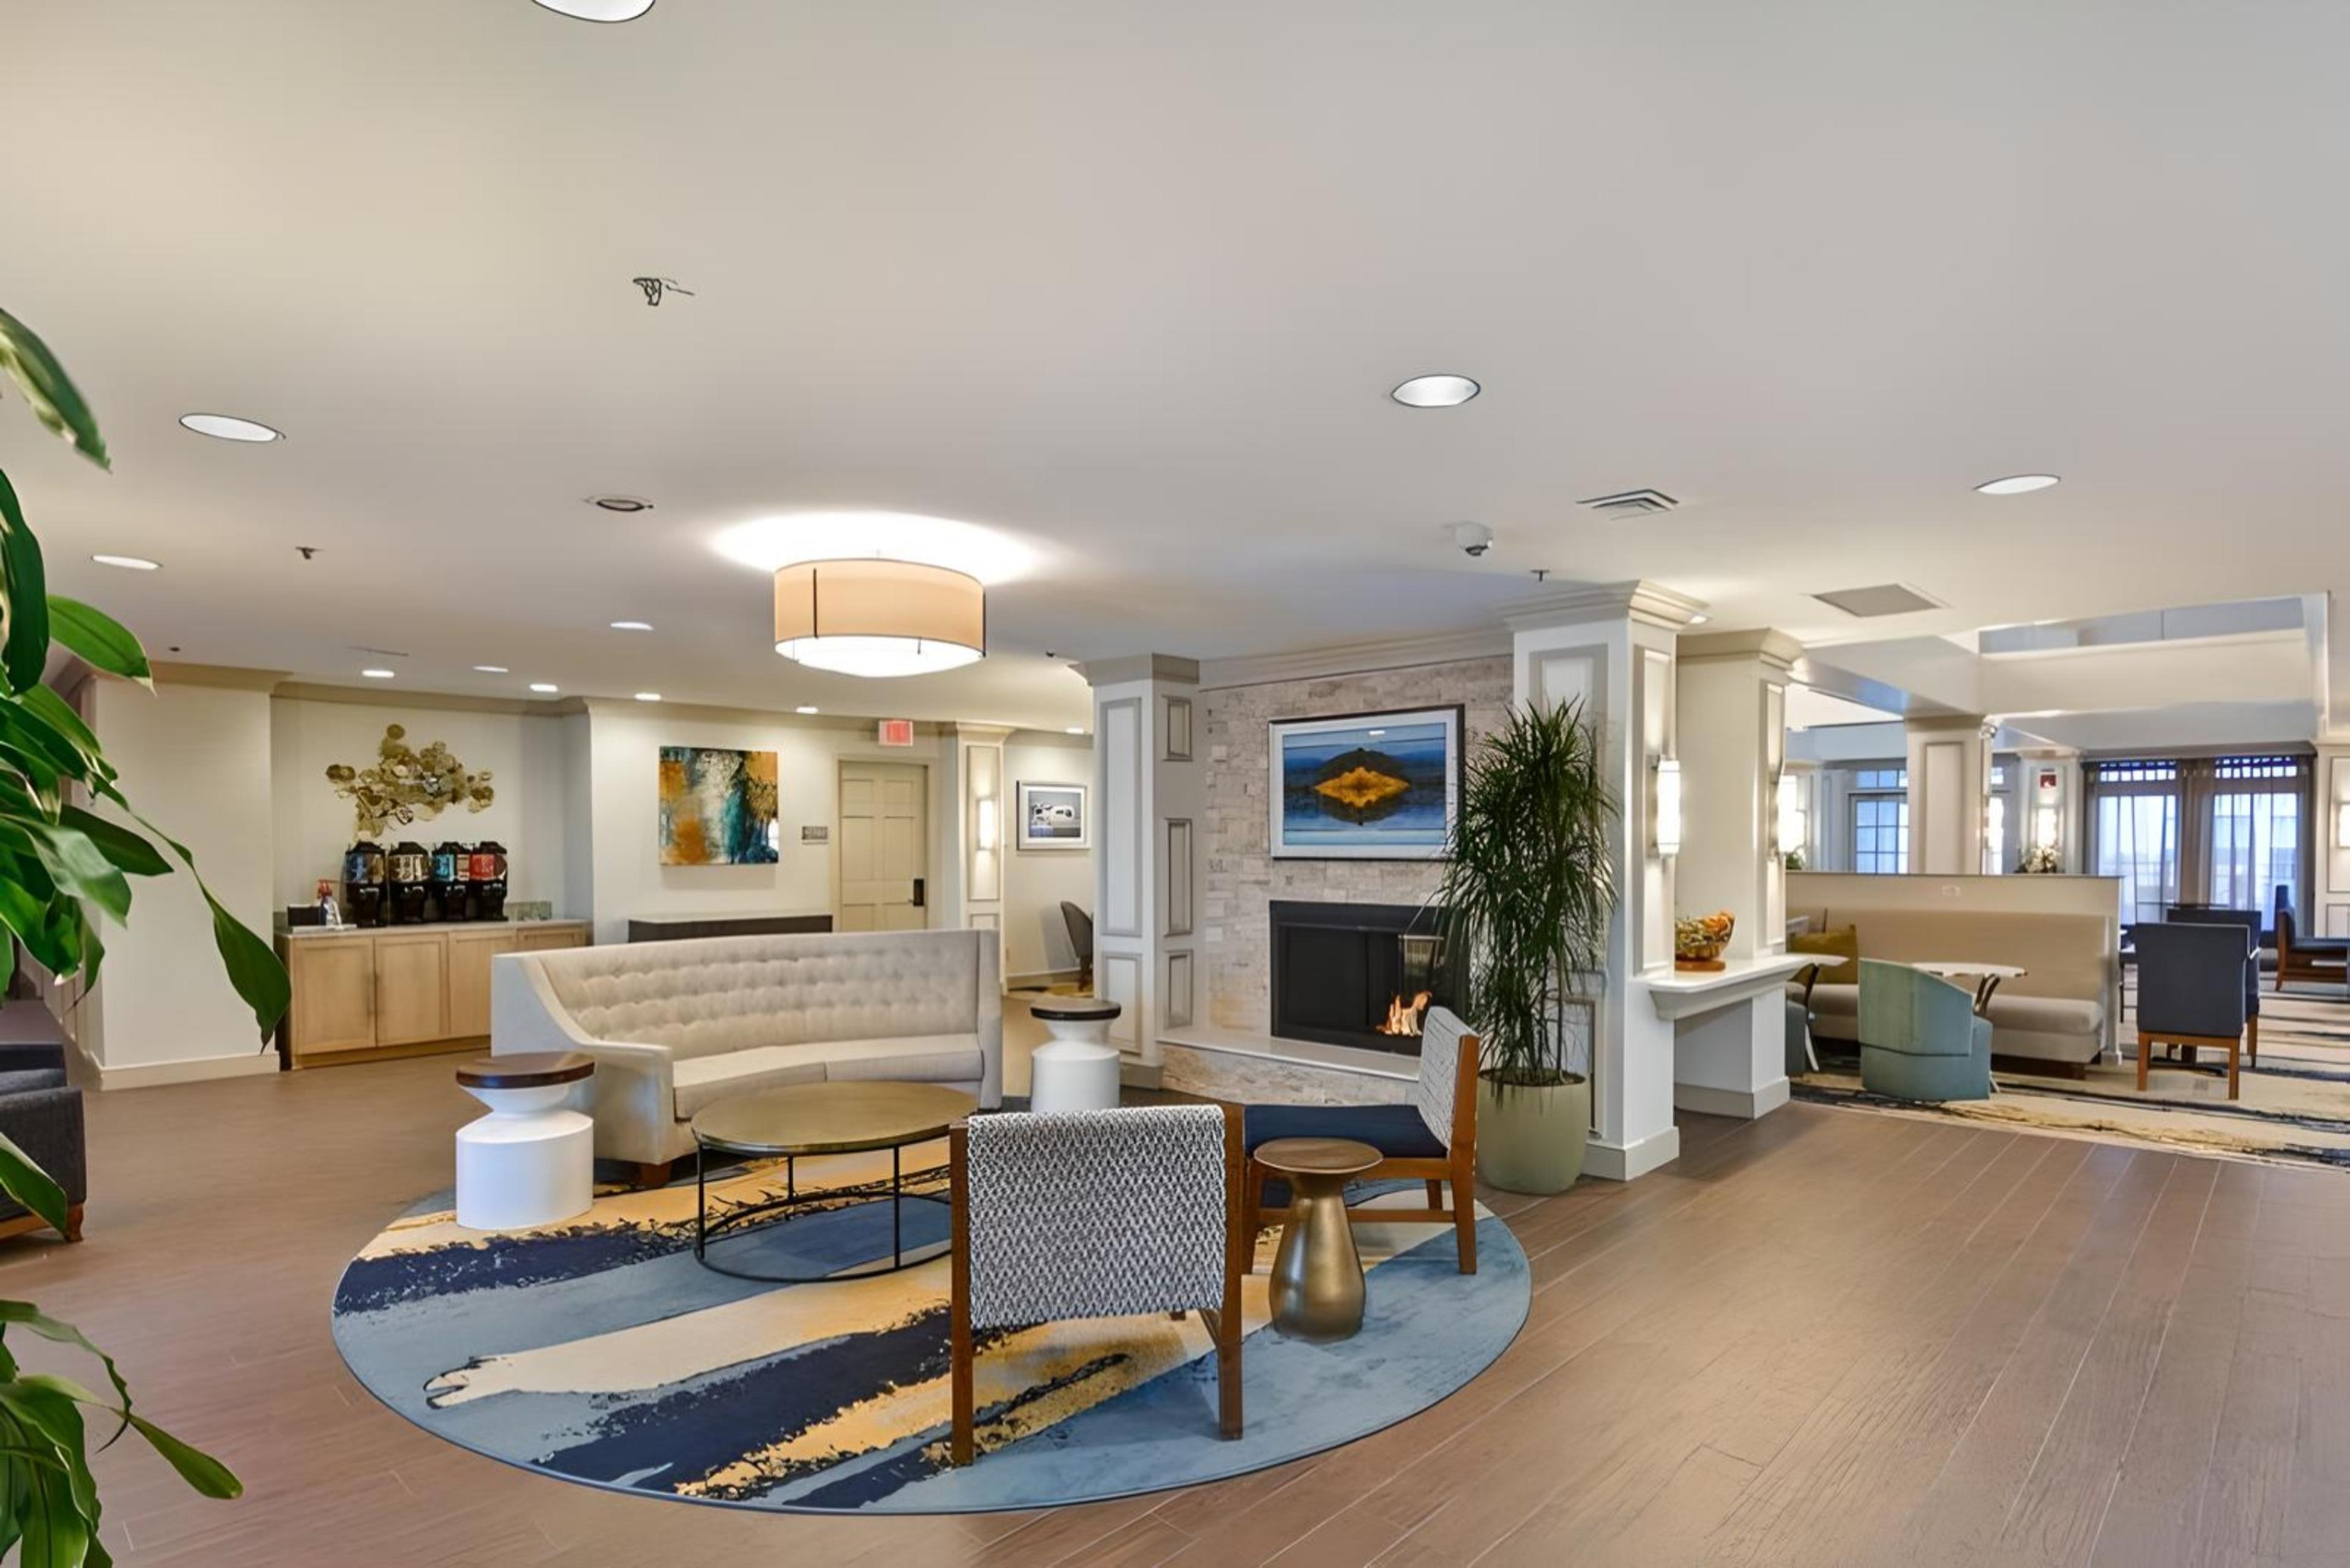 Homewood Suites by Hilton Windsor Locks Bradley Airport